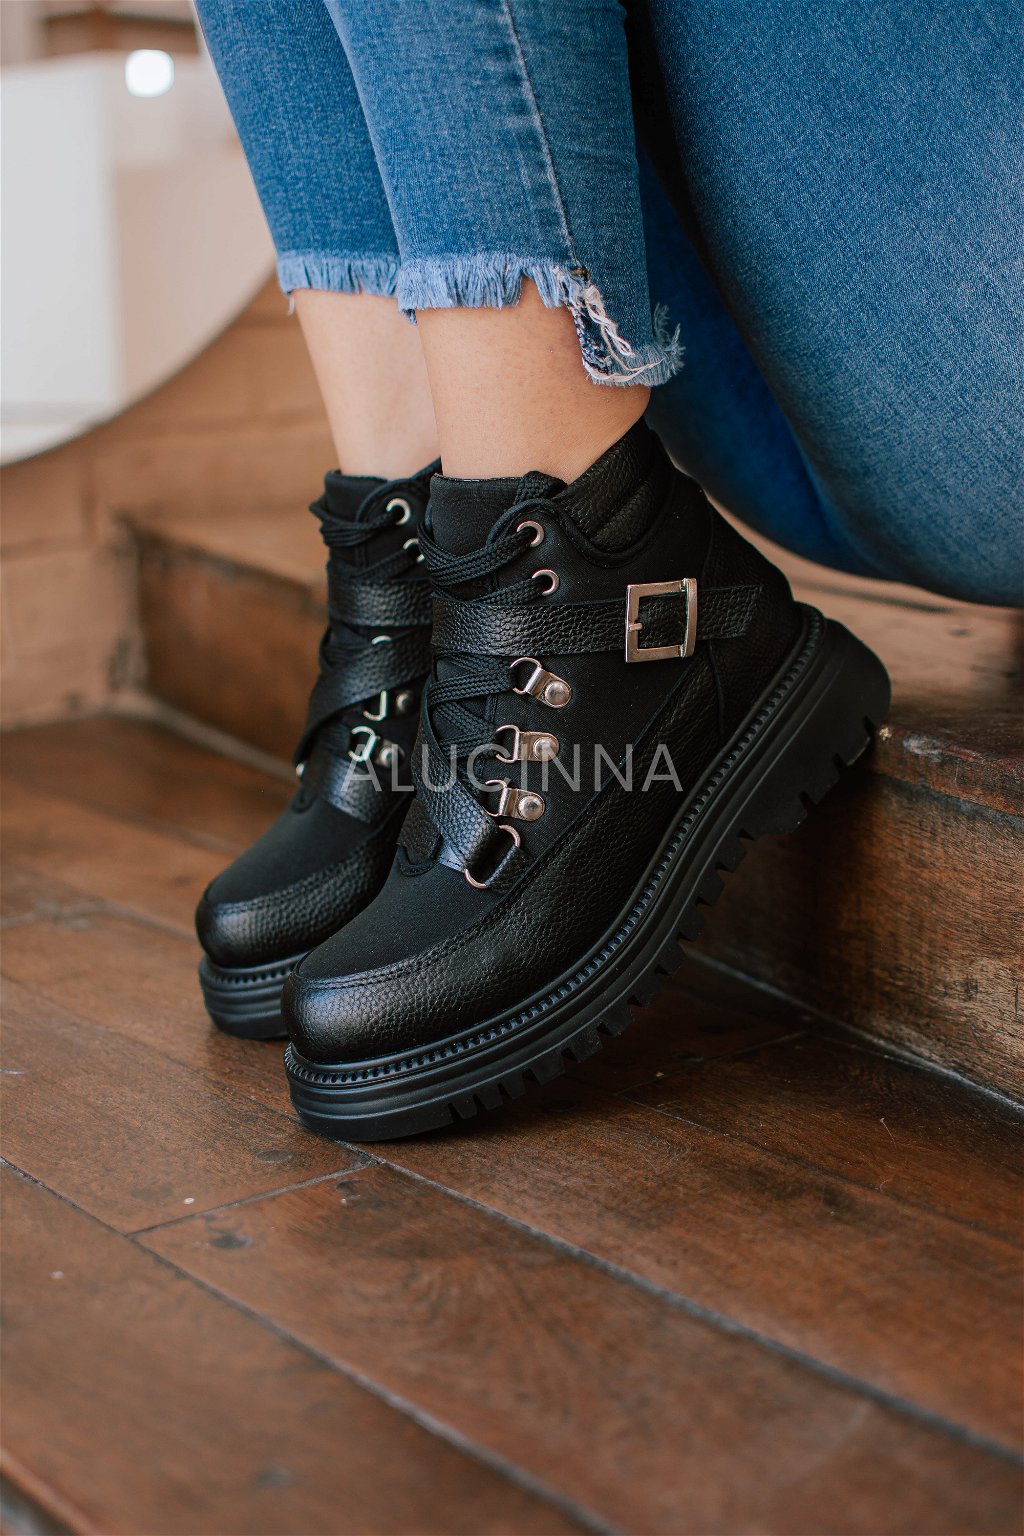 Negro - Alucinna Shoes